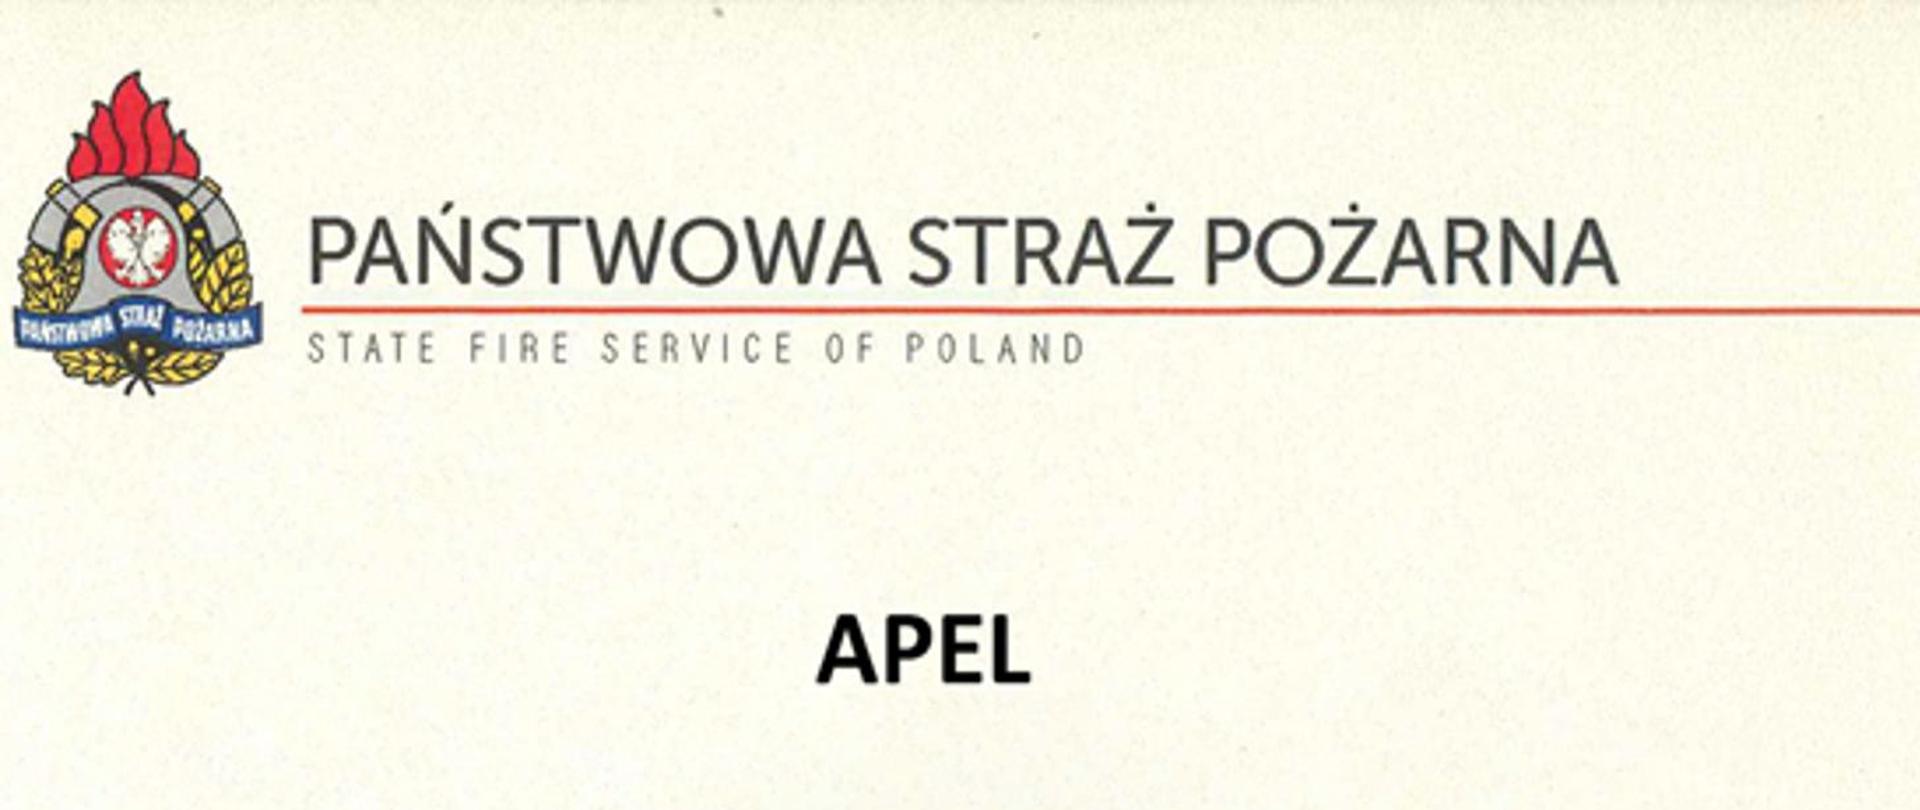 Na zdjęciu logo oraz napis Państwowa Straż PożarnaI (pod spodem State Fire Service of Poland). Poniżej na środku słowo APEL. Zdjęcie o jasnym tle